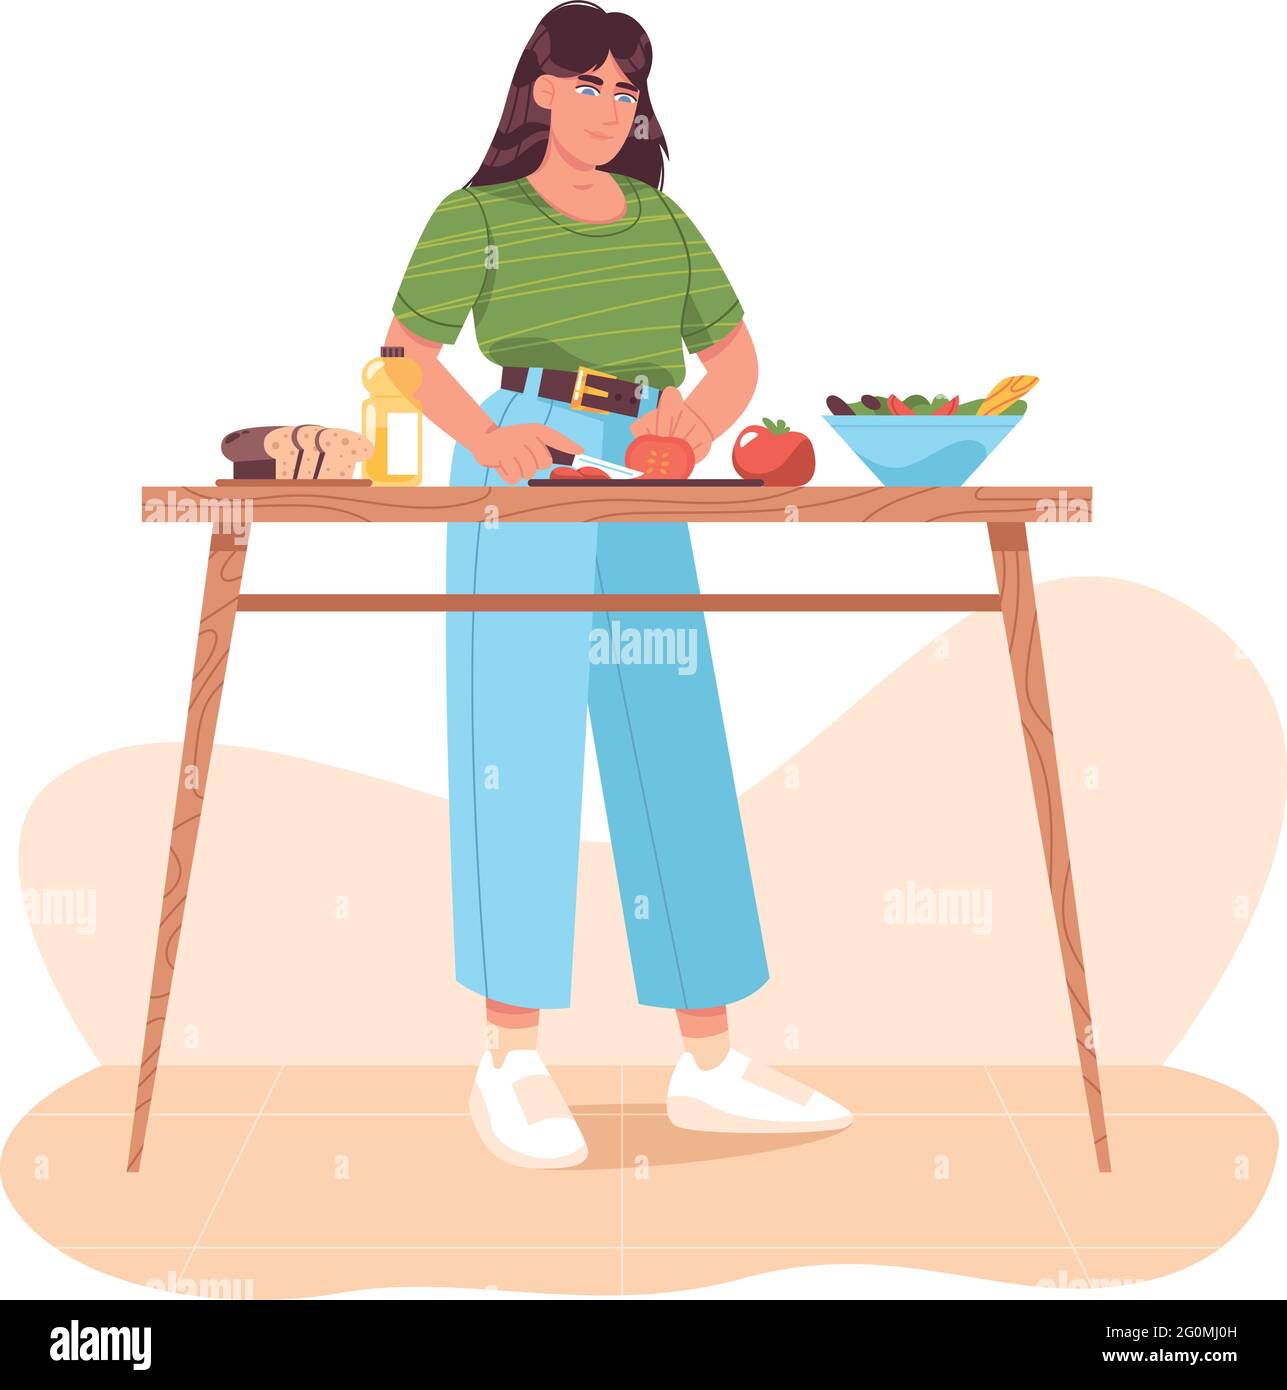 Donna che prepara cibo sano, tagliando verdure fresche. Piatti fatti in casa su tavolo da cucina a casa. Ragazza che cucina insalata di verdure, affettare pomodori. Cucina vegetariana. Illustrazione vettoriale a fumetto piatto. Illustrazione Vettoriale